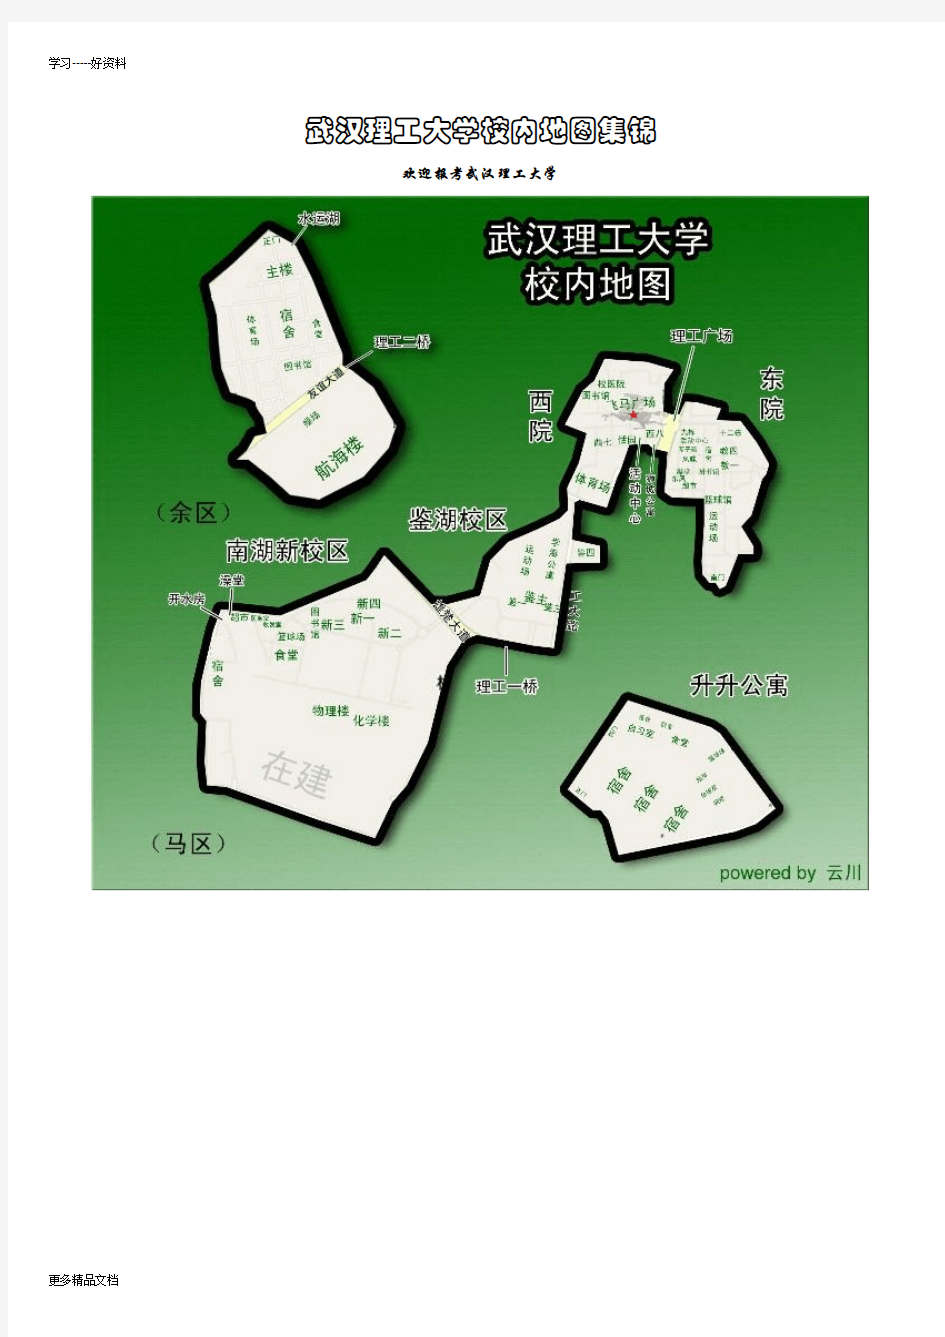 武汉理工大学校园地图(最全)教学内容